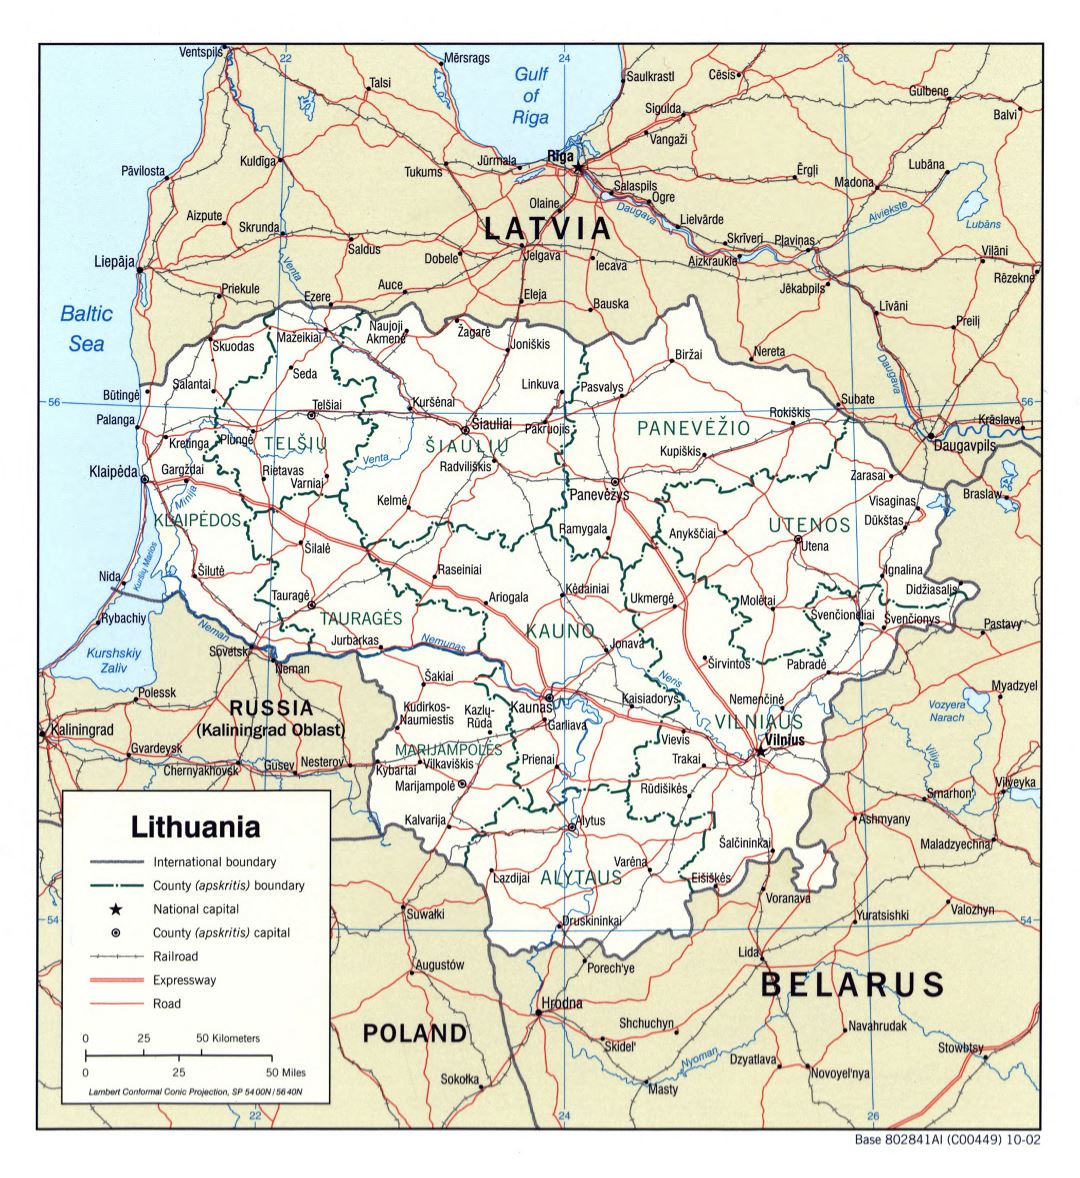 Grande detallado mapa política y administrativa de Lituania con carreteras, ferrocarriles y principales ciudades - 2002